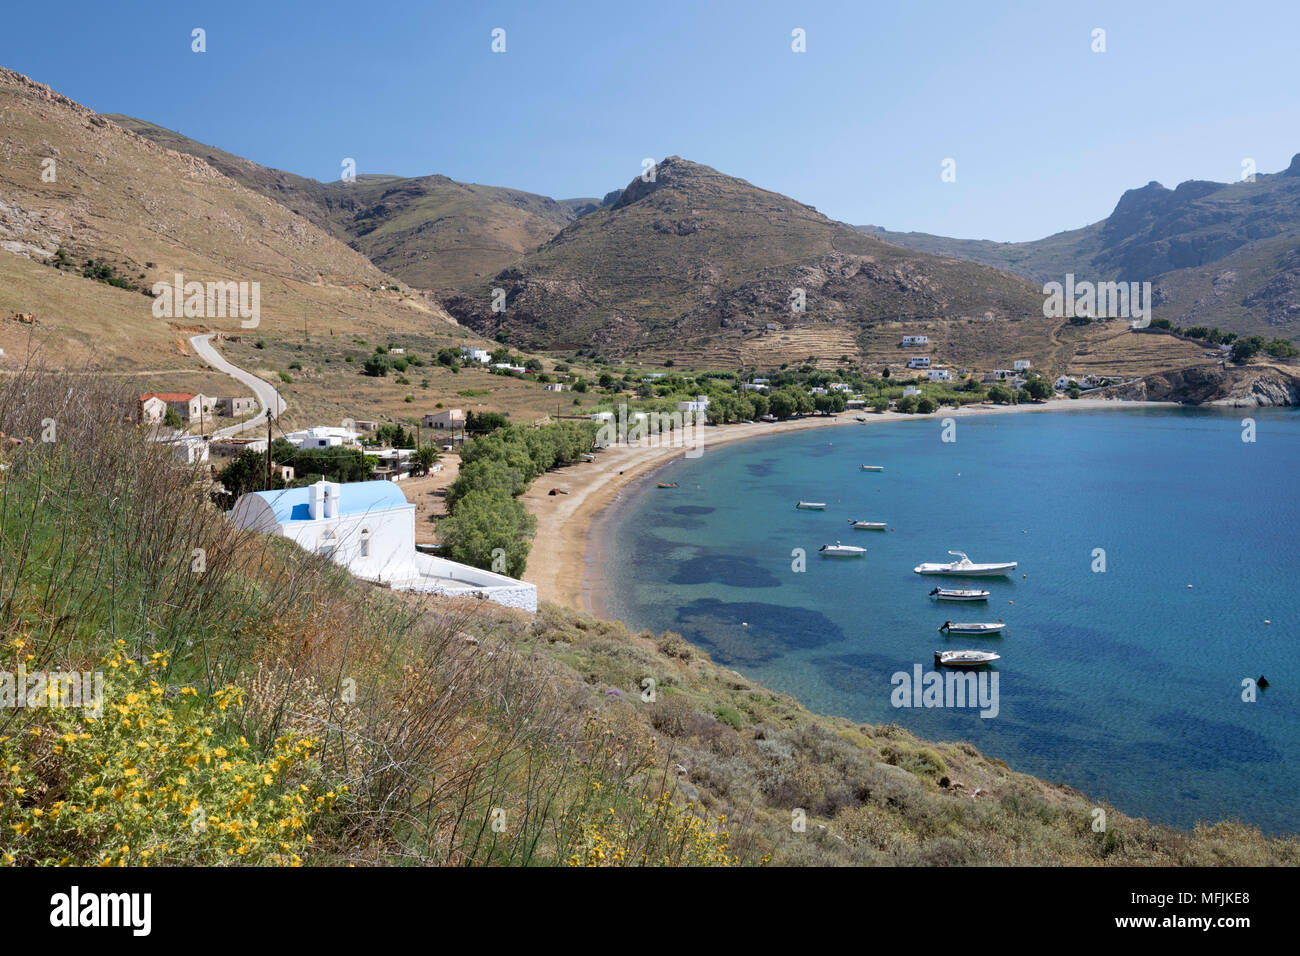 Vue sur la baie de Koutalas et plage, sur la côte sud-est de l'île, Serifos, Cyclades, Mer Égée, îles grecques, Grèce, Europe Banque D'Images